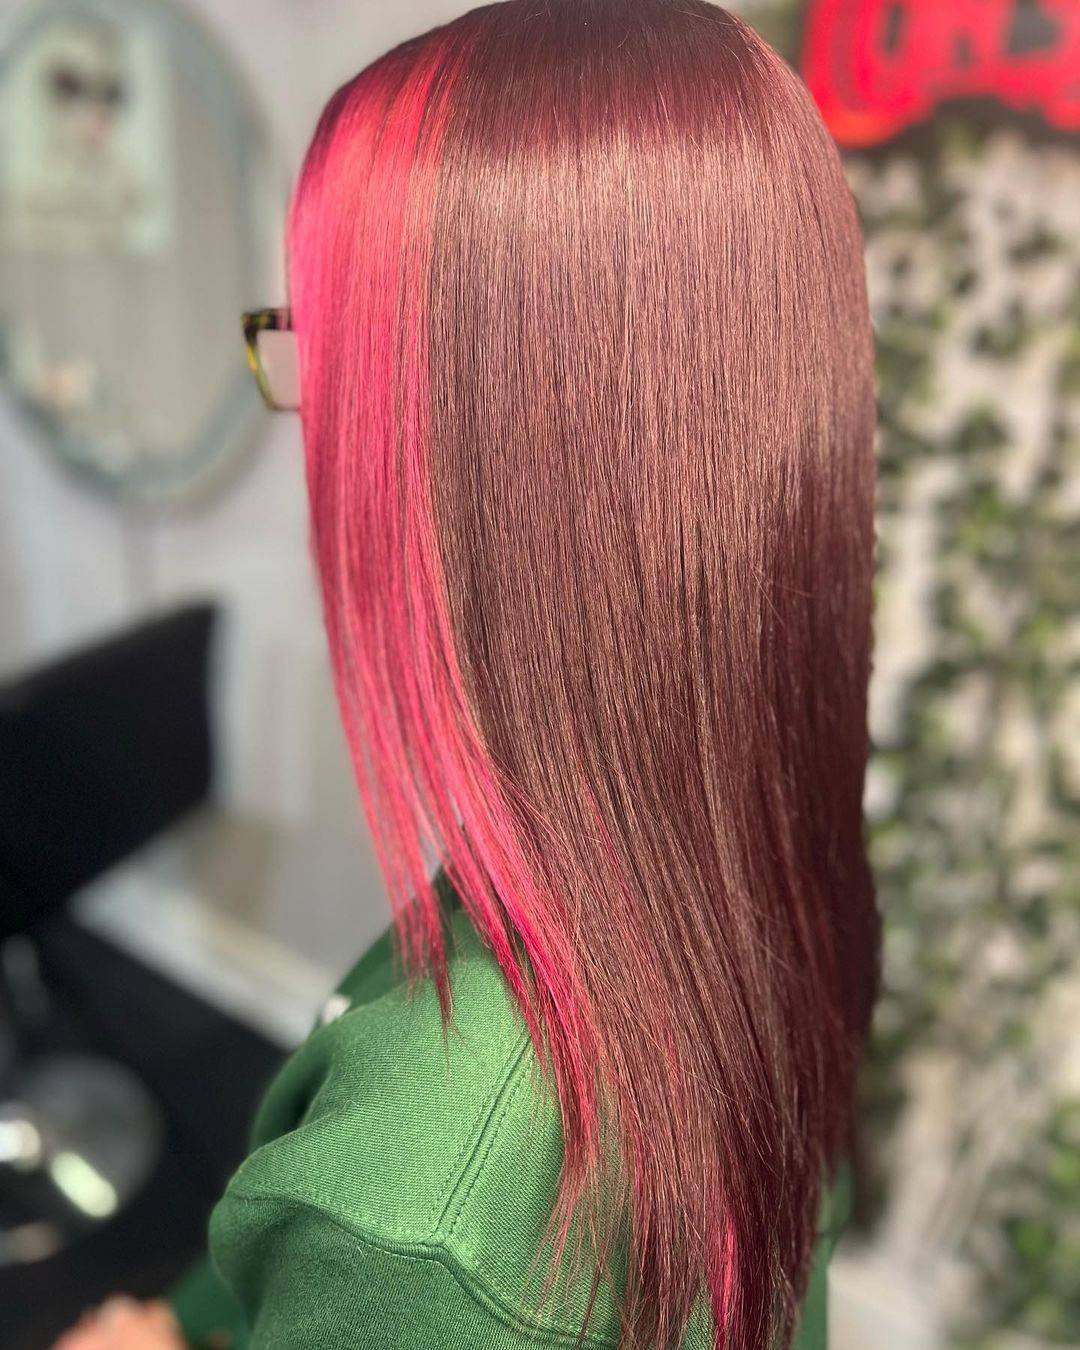 Burgundy hair color 162 burgundy hair color | burgundy hair color for women | burgundy hair color highlights Burgundy Hair Color